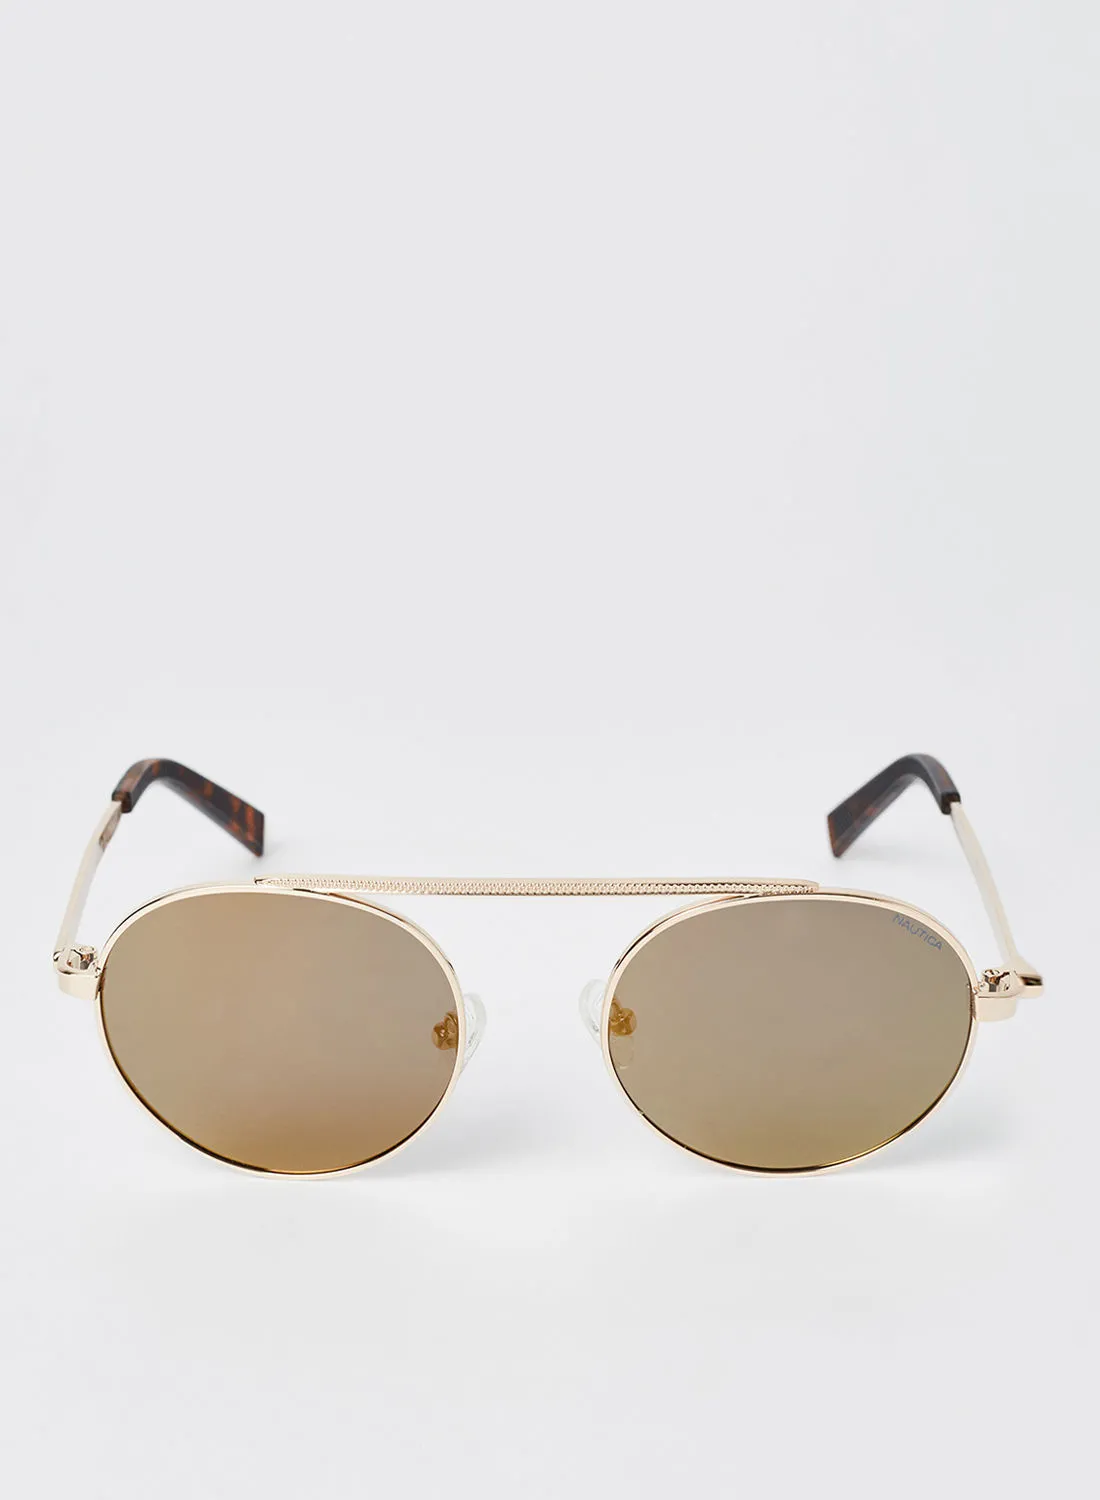 NAUTICA Men's Full Rim Metal Round Sunglasses - Lens Size: 51 mm